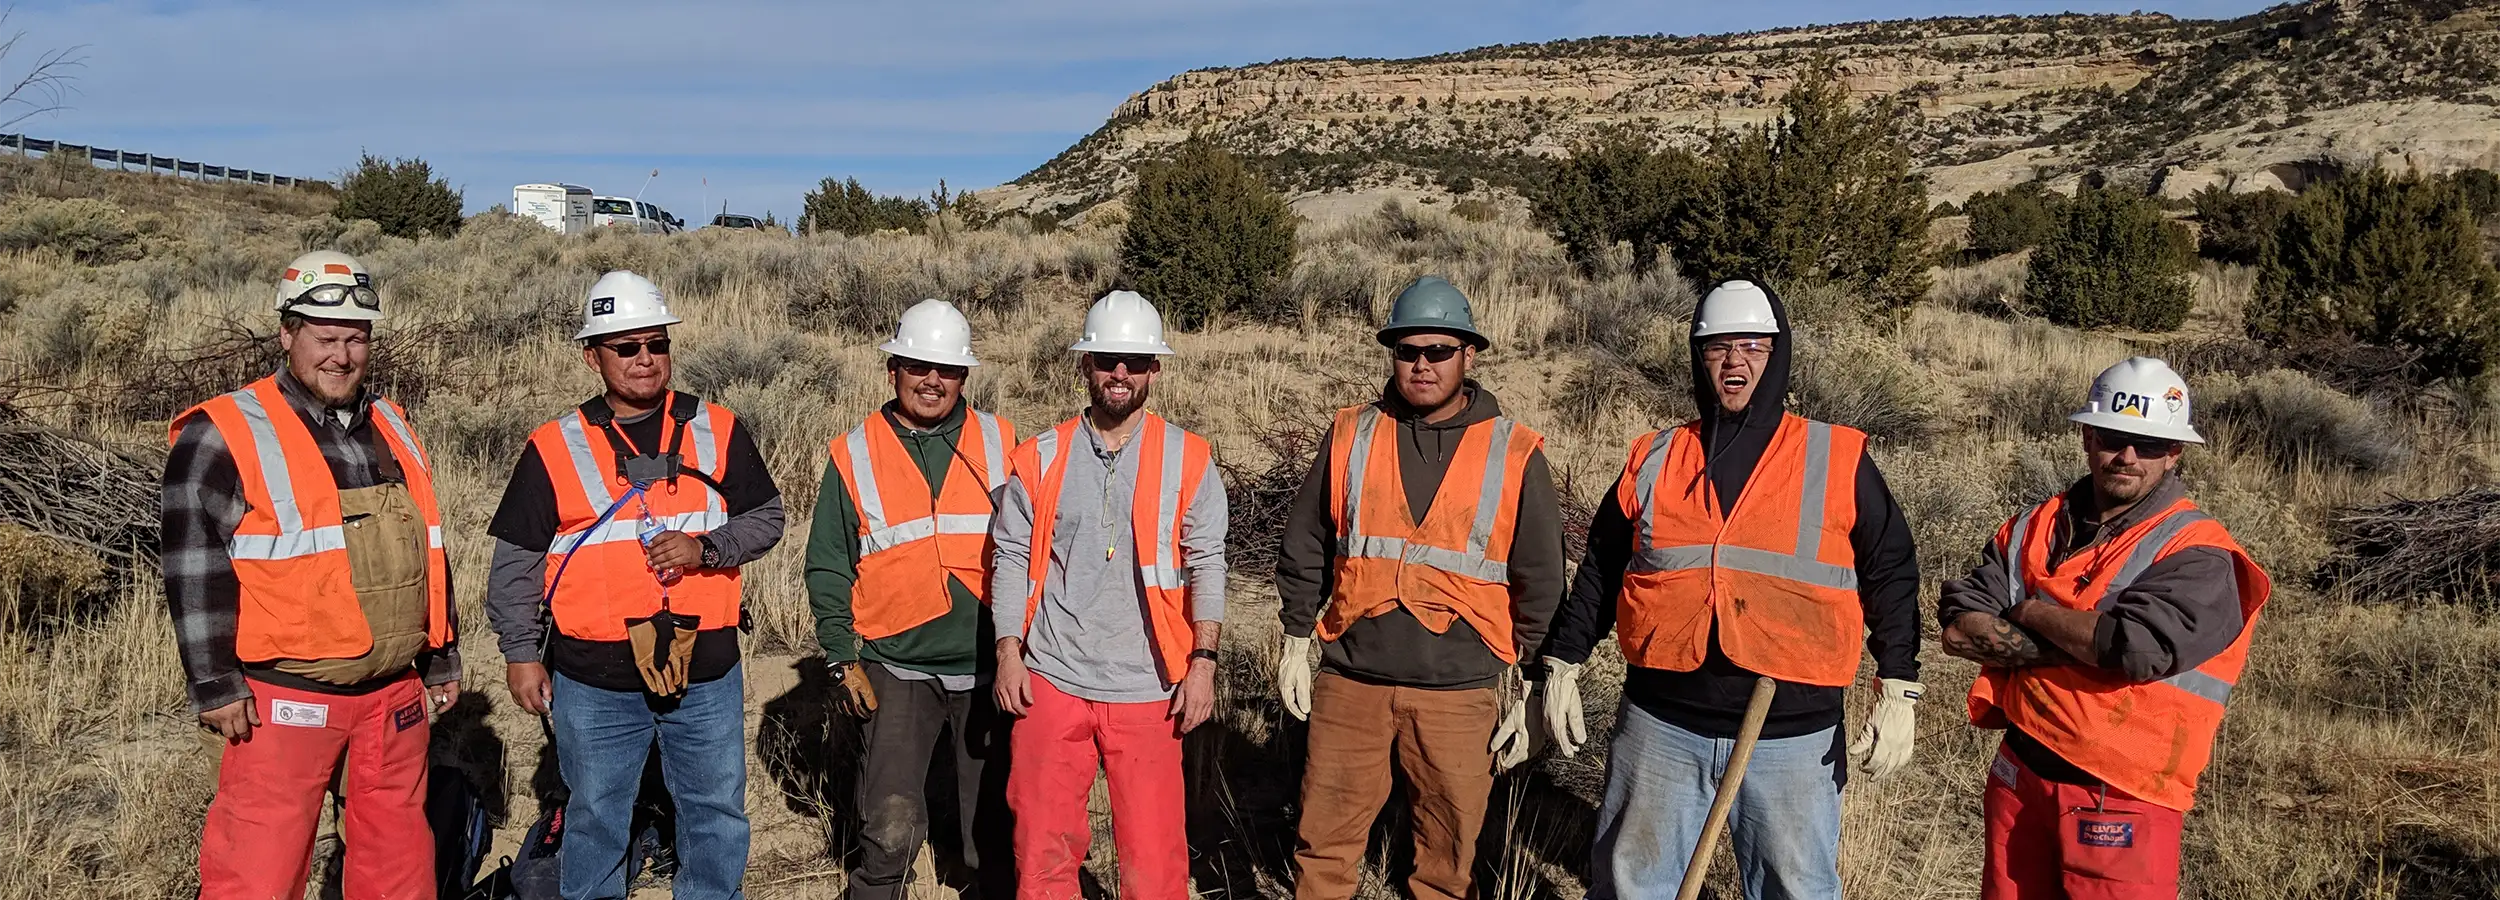 Employment at Horizon Environmental Services, Inc. in Durango, Colorado